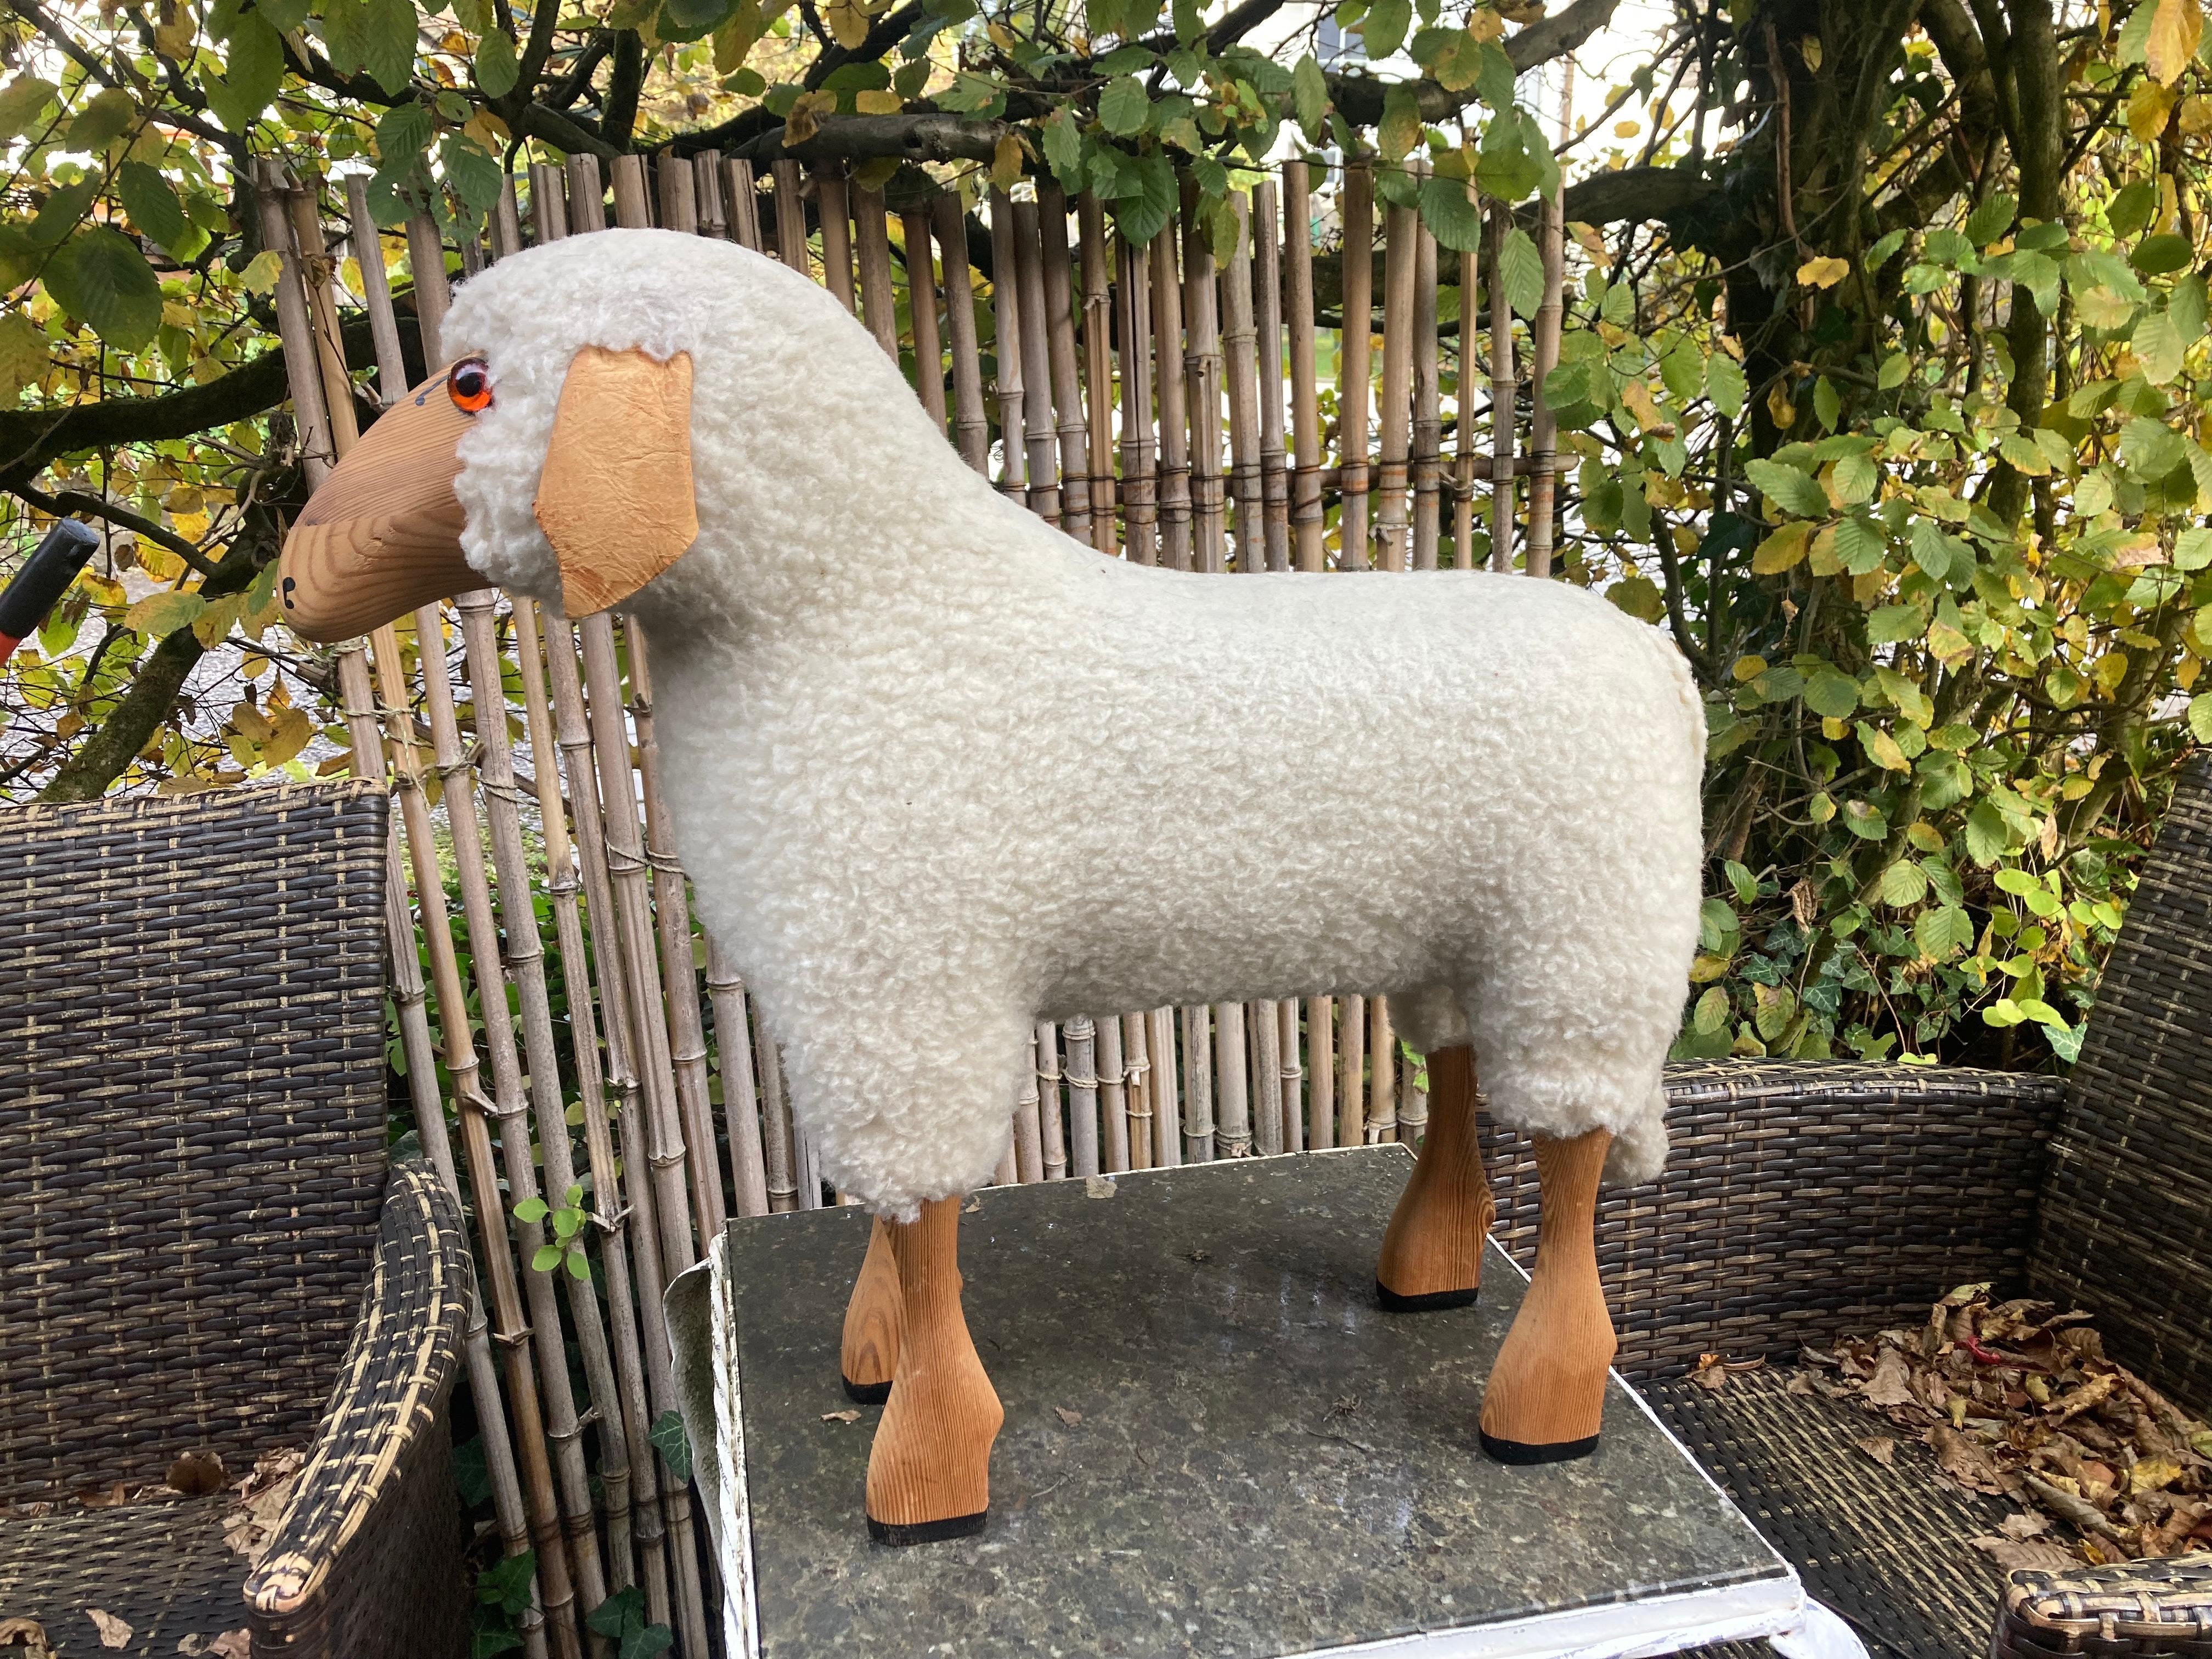 Ein weißes Wollschaf von Hans-Peter Krafft. 1970s. Hergestellt in Deutschland.
Das Schaf wurde aus originaler weißer Wolle, Leder und massiver hochwertiger Buche handgefertigt.
Die gesamte Produktion fand in Deutschland statt. Ursprünglich dienten